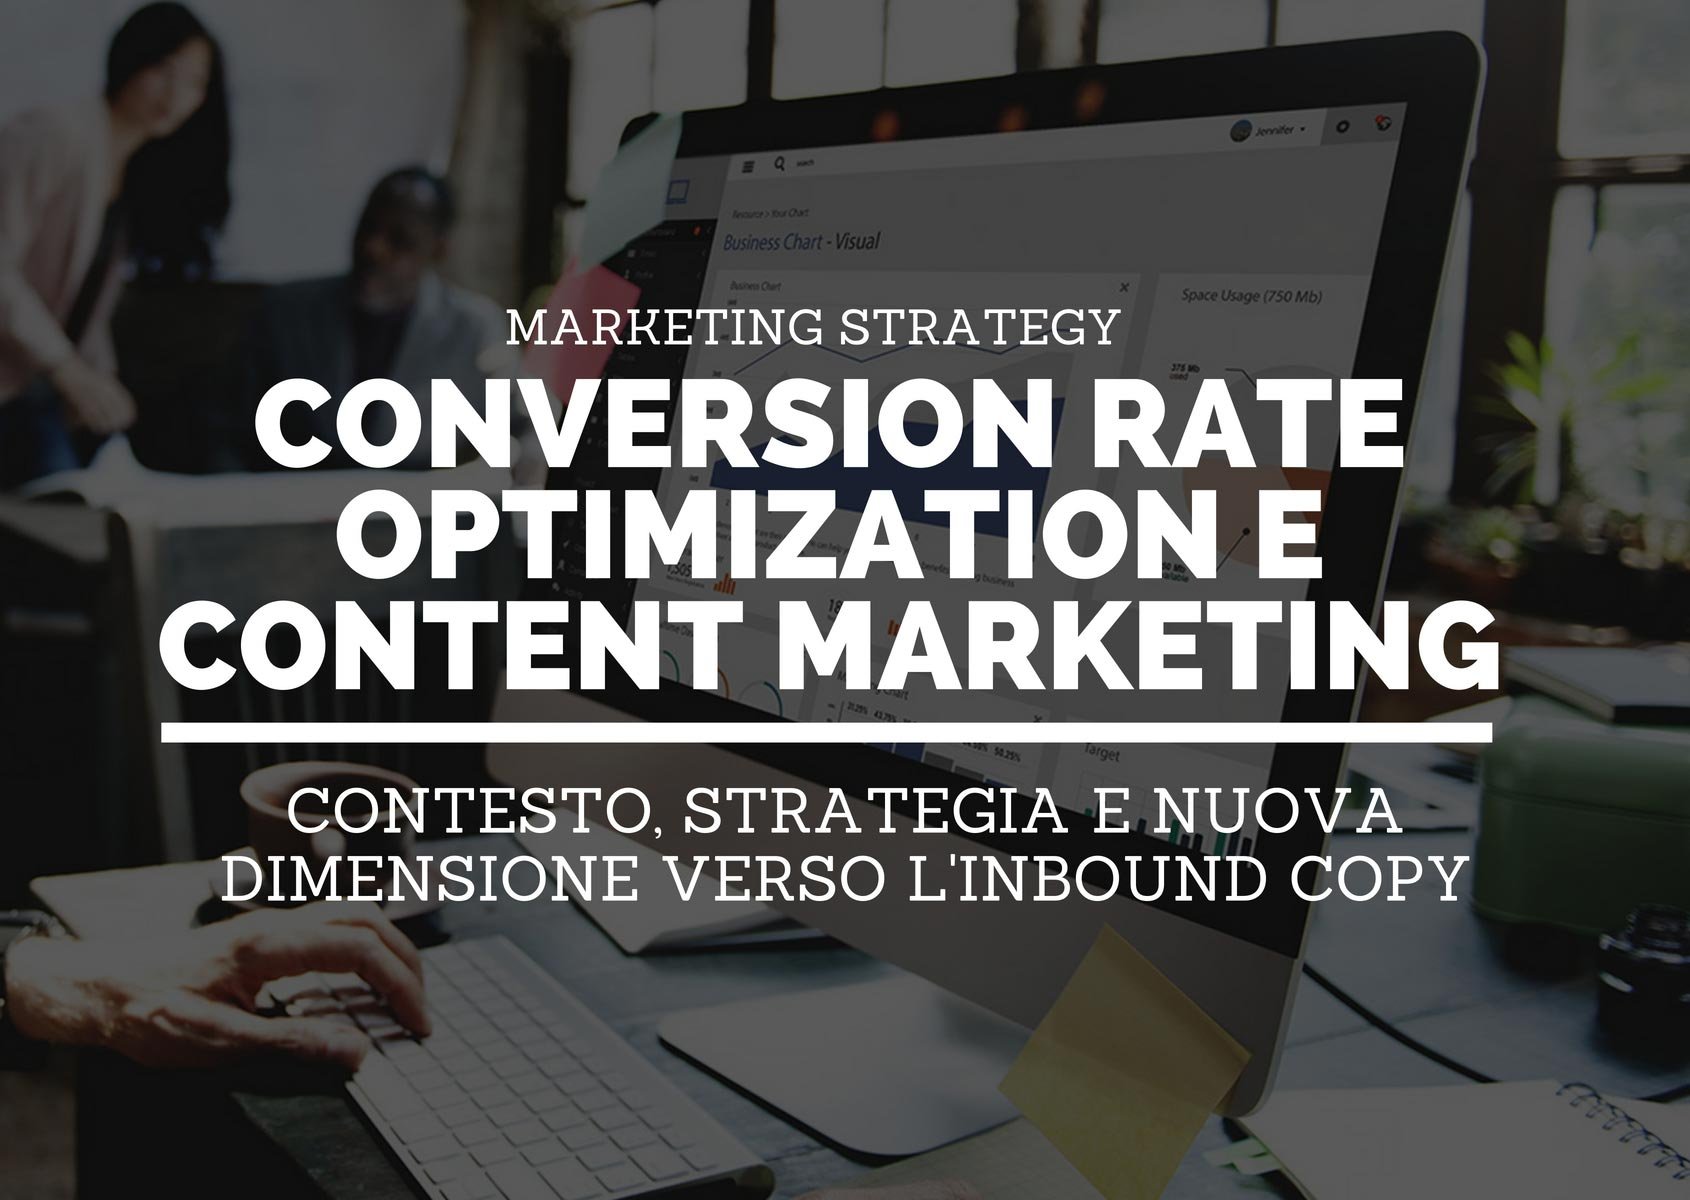 Conversion rate optimization e content marketing